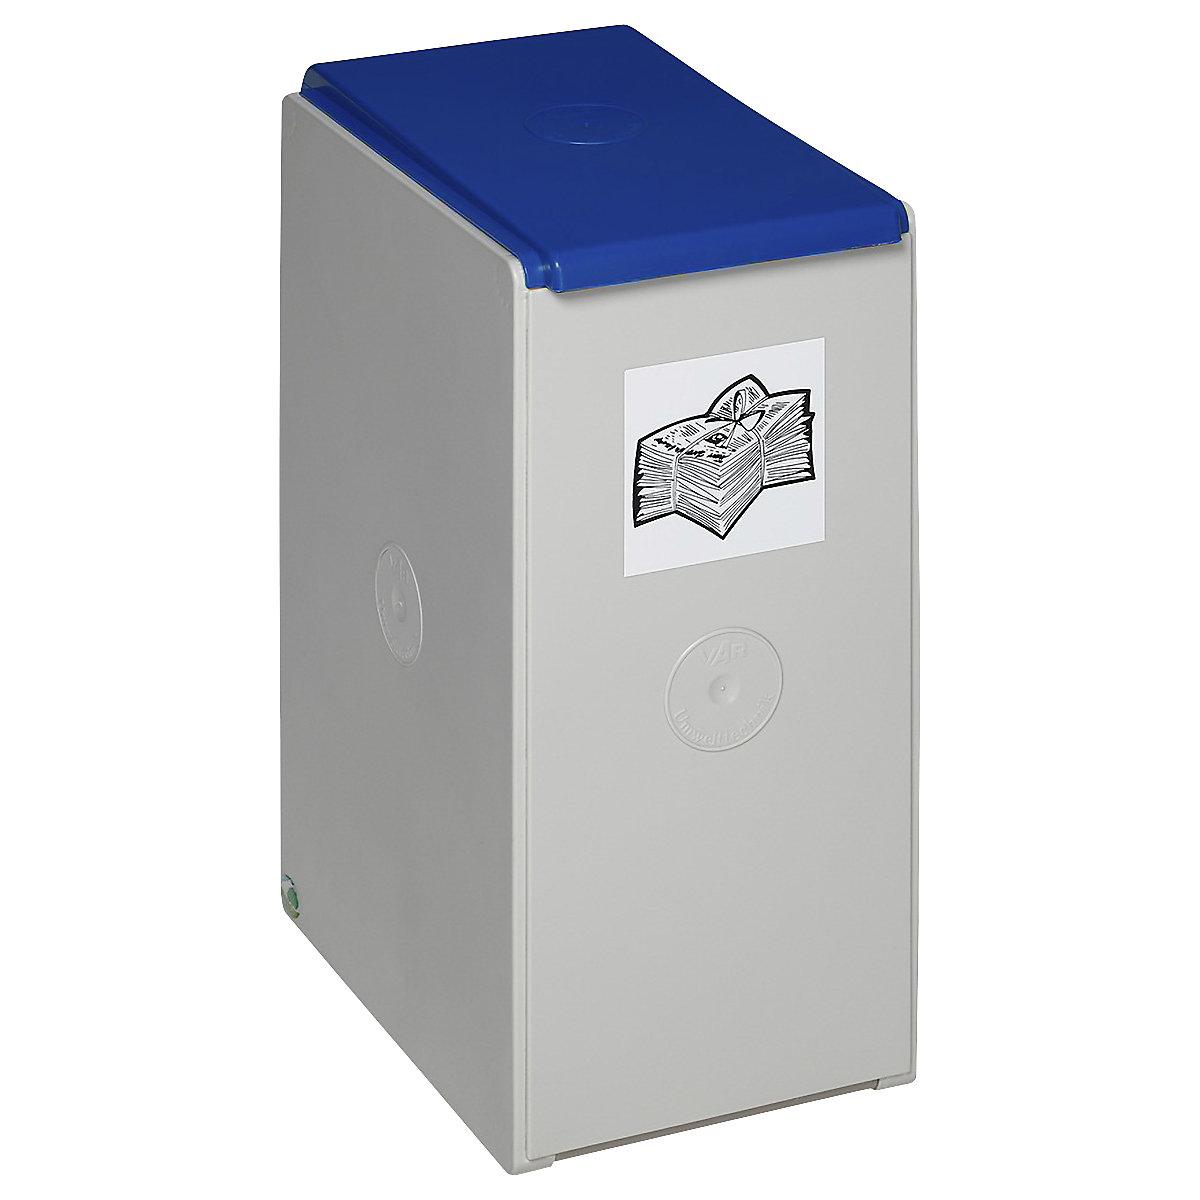 Coletor de materiais recicláveis em plástico – VAR, recipiente individual com capacidade de 40 l, azul-5